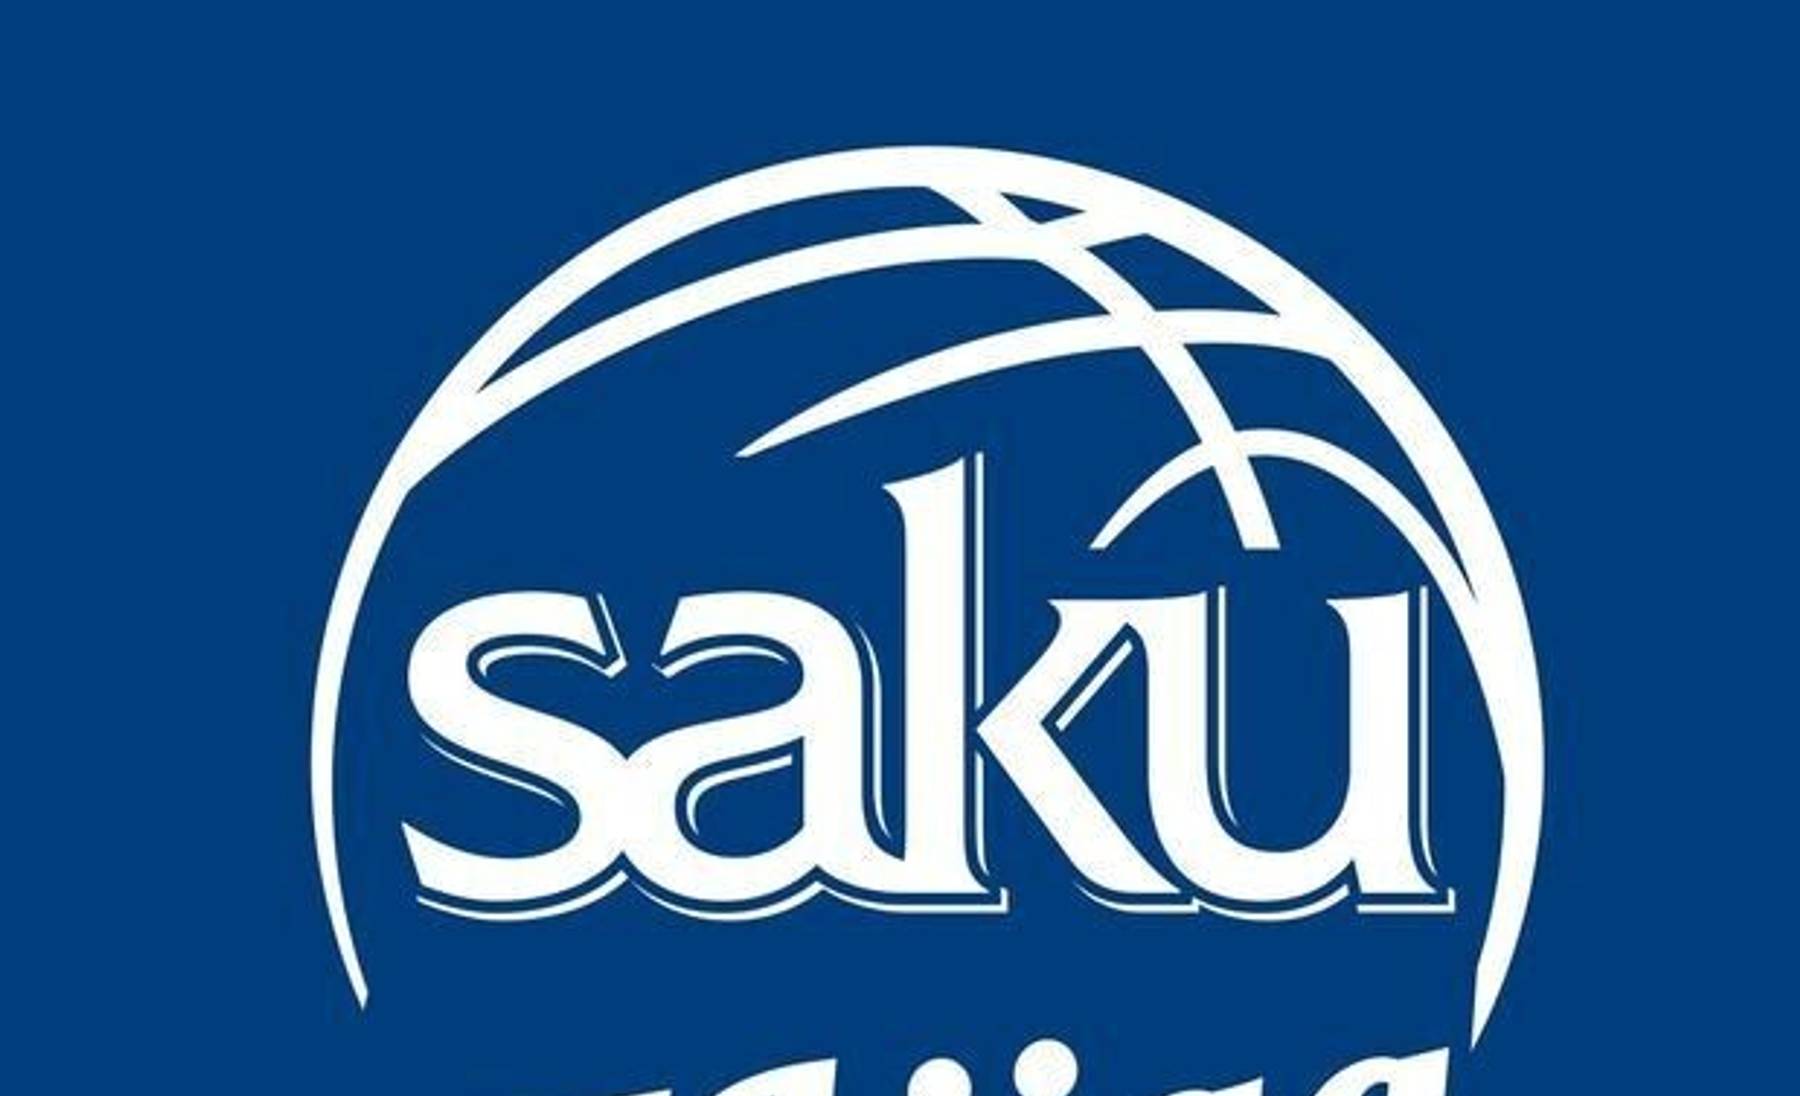 Saku II Liiga logo